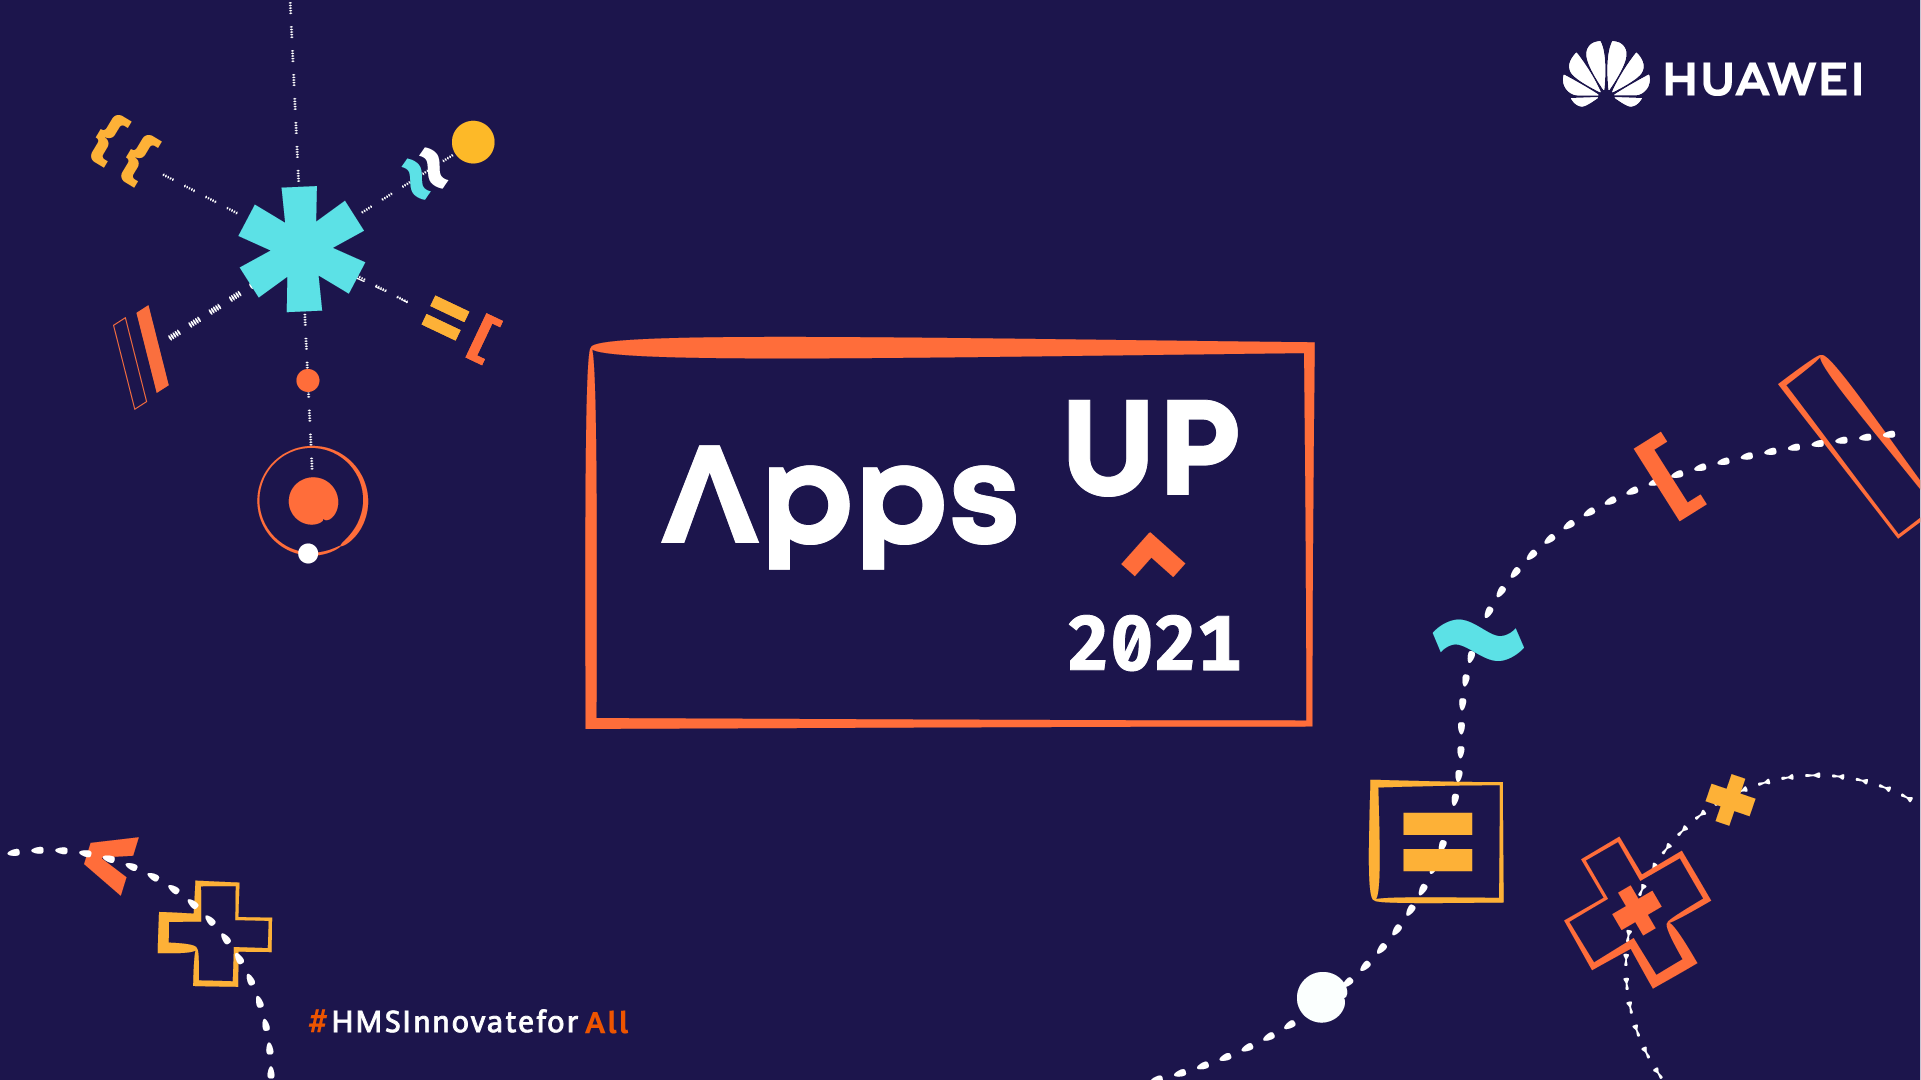 Annunciato da Huawei la nuova edizione di AppsUP, il concorso dedicato ai talentuosi sviluppatori di ogni livello